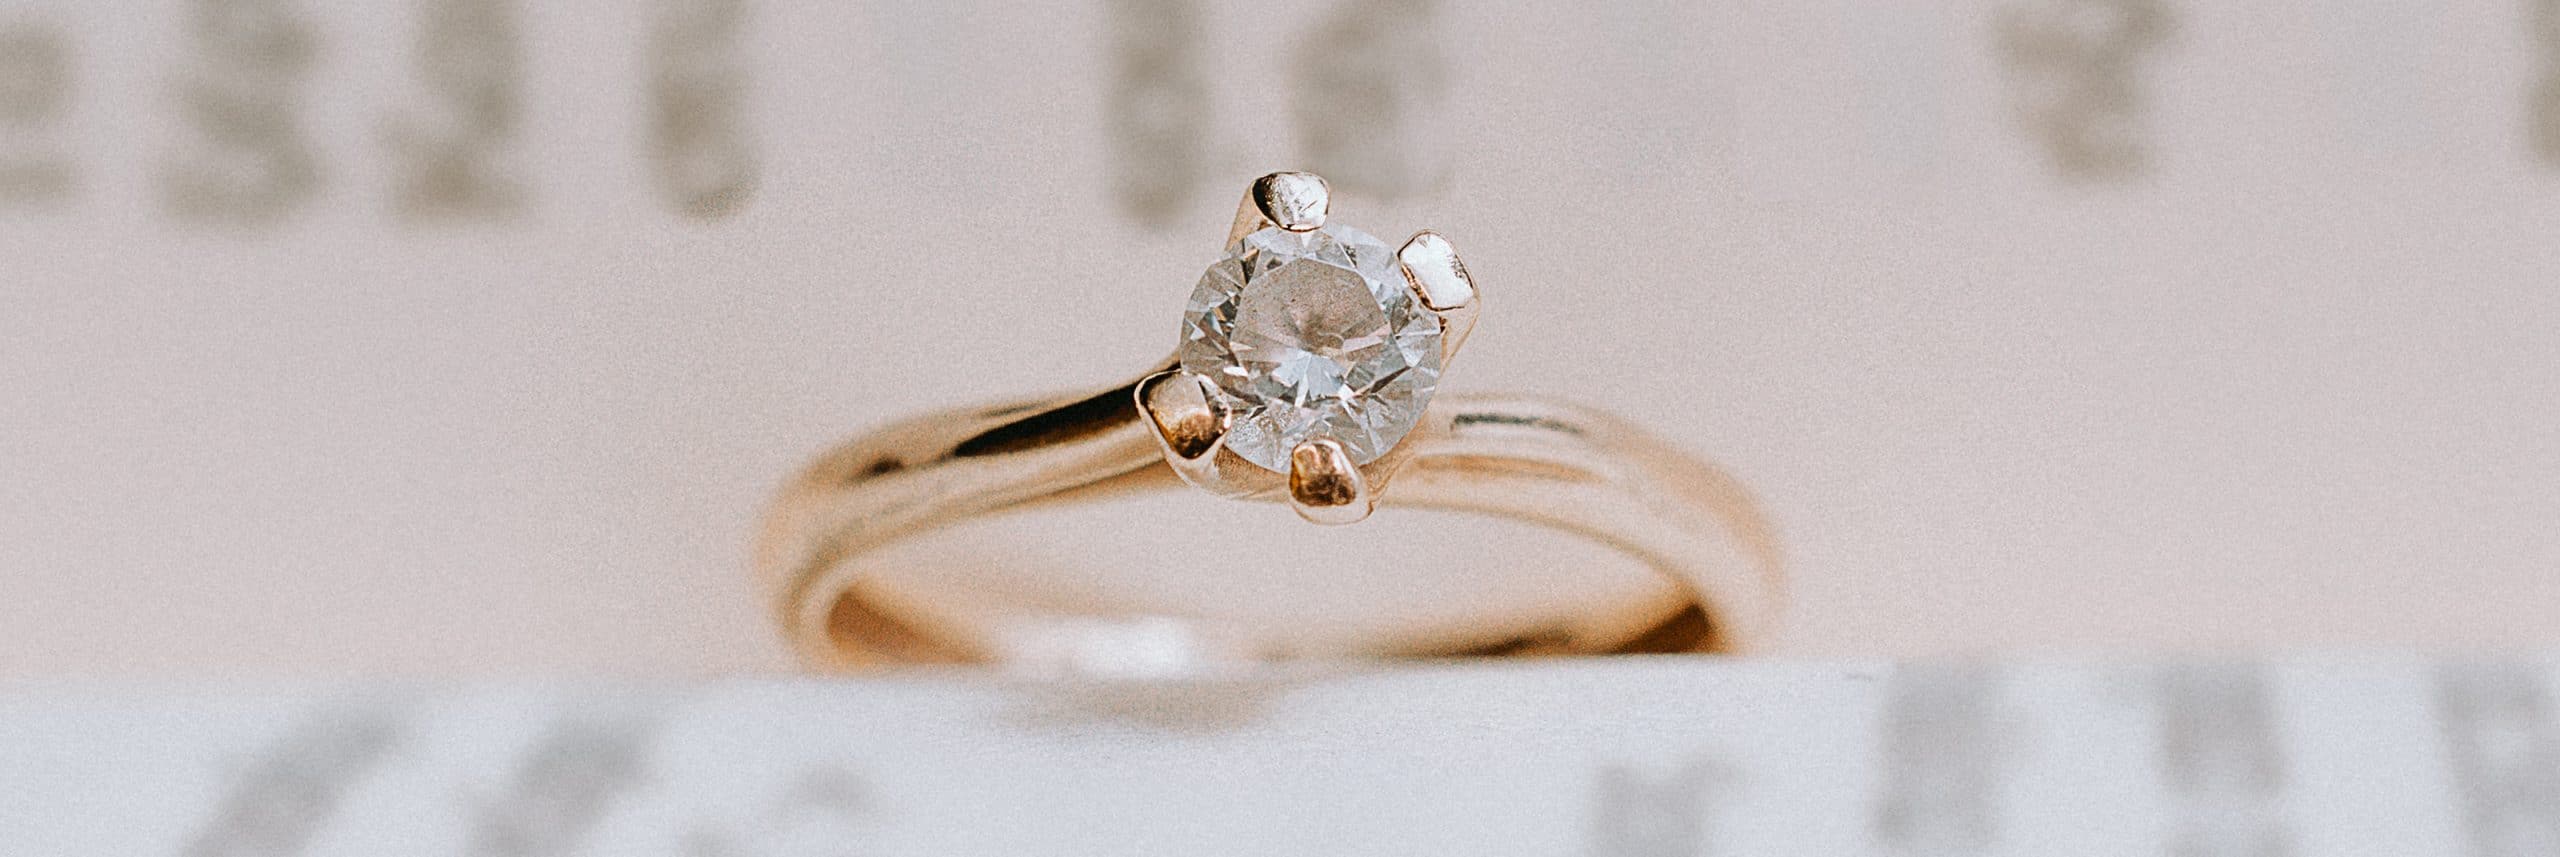 Φωτογραφία δαχτυλιδιού πρότασης γάμου, μονόπετρο χρυσό με διαμάντι, η φωτογραφία τραβήχτηκε στην θεσσαλονίκη gkphotography απο τον Γιώργο Καρασαββίδη